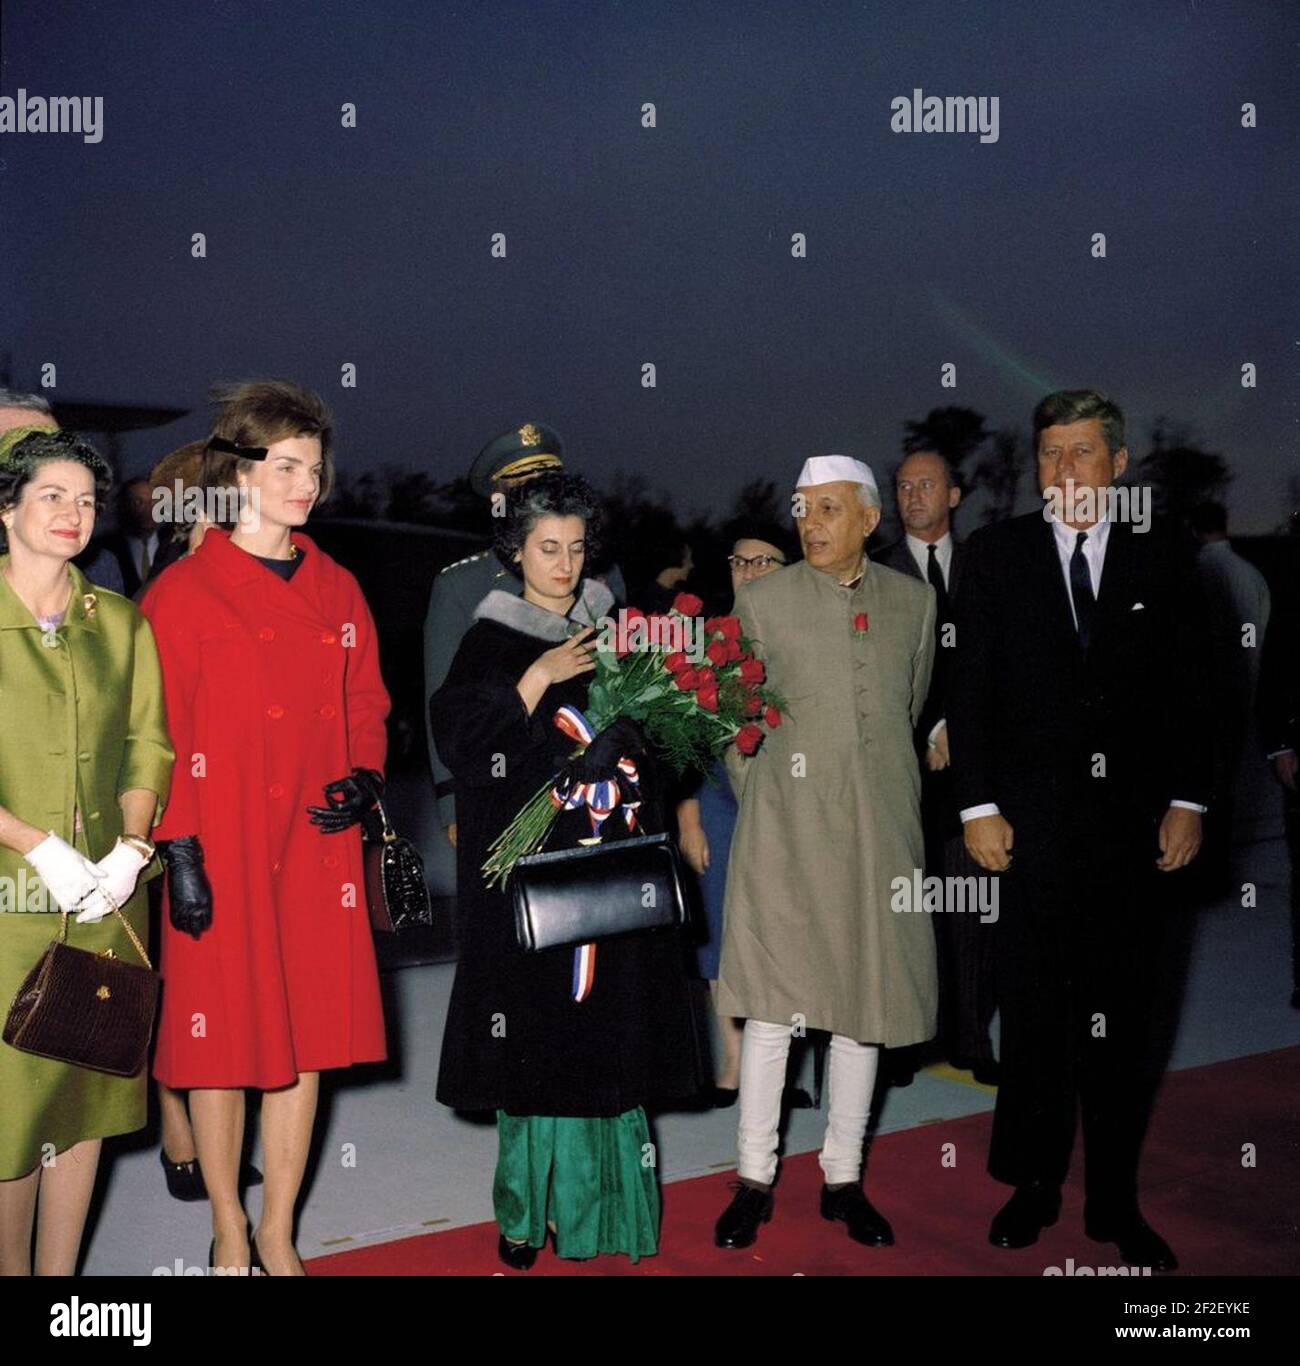 Präsident John F. Kennedy, First Lady Jacqueline Kennedy, Premierminister von Indien Jawaharlal Nehru und andere bei der Ankunft Zeremonien (Farbe). Stockfoto